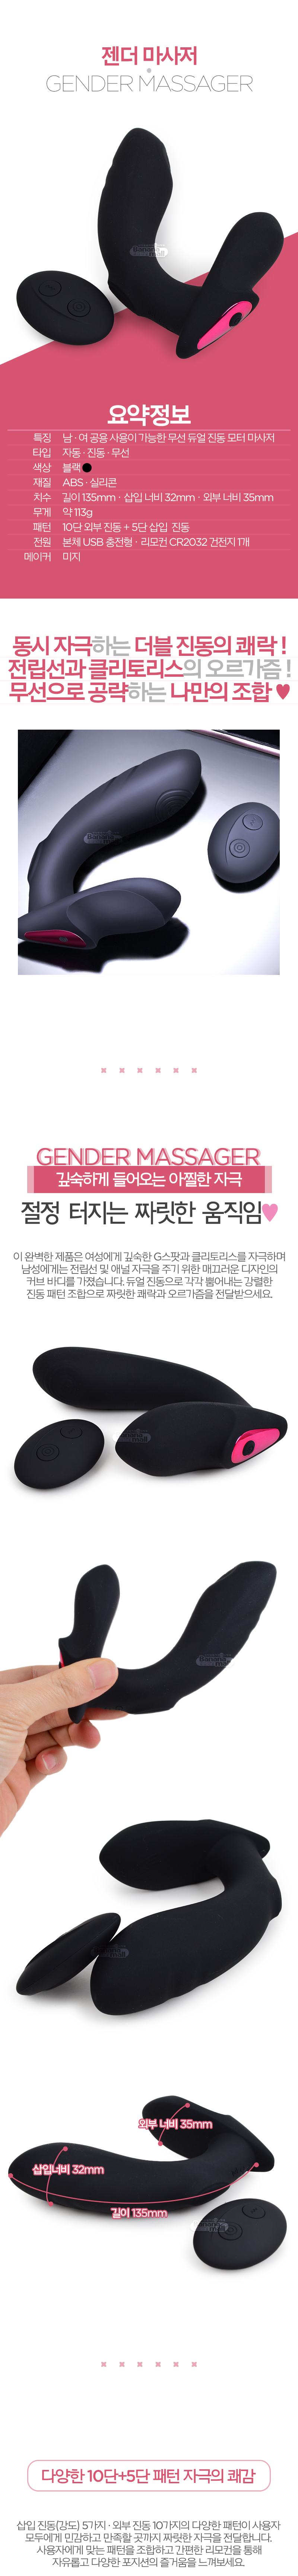 [10단 진동+5단 강도] 젠더 마사저(Gender Massager)